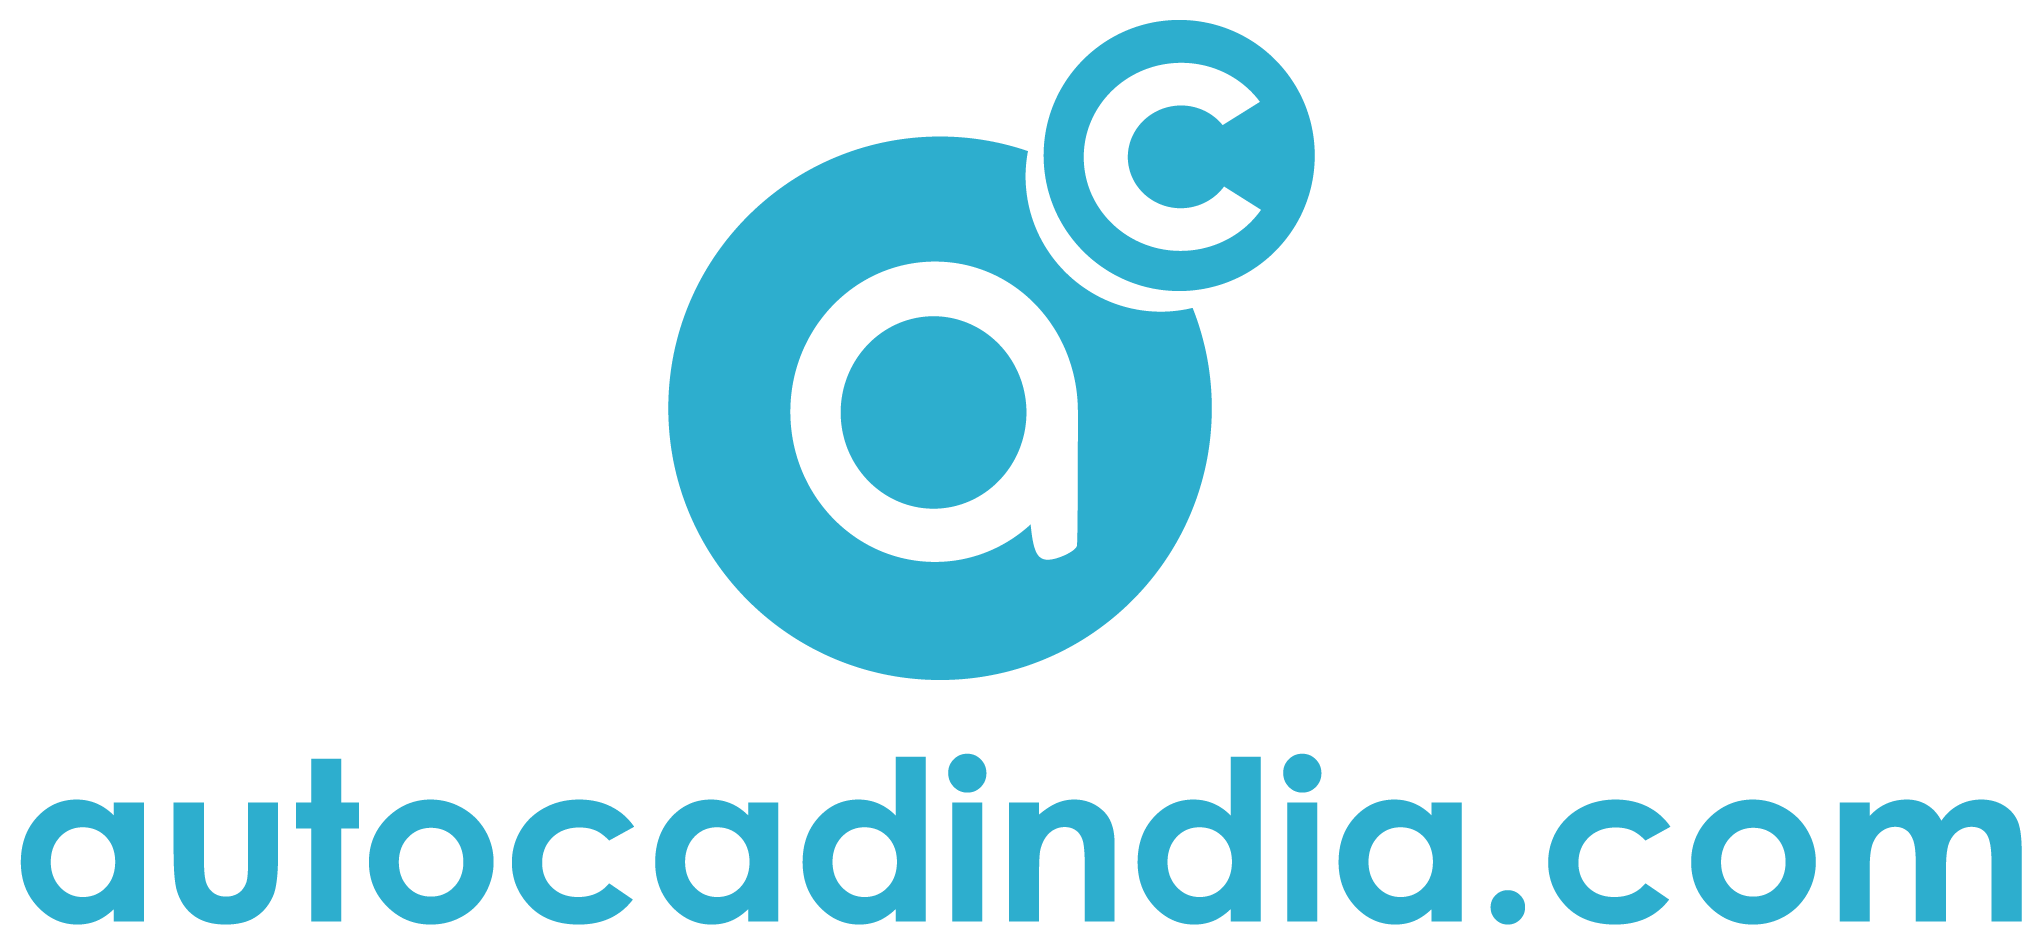 AutoCad India